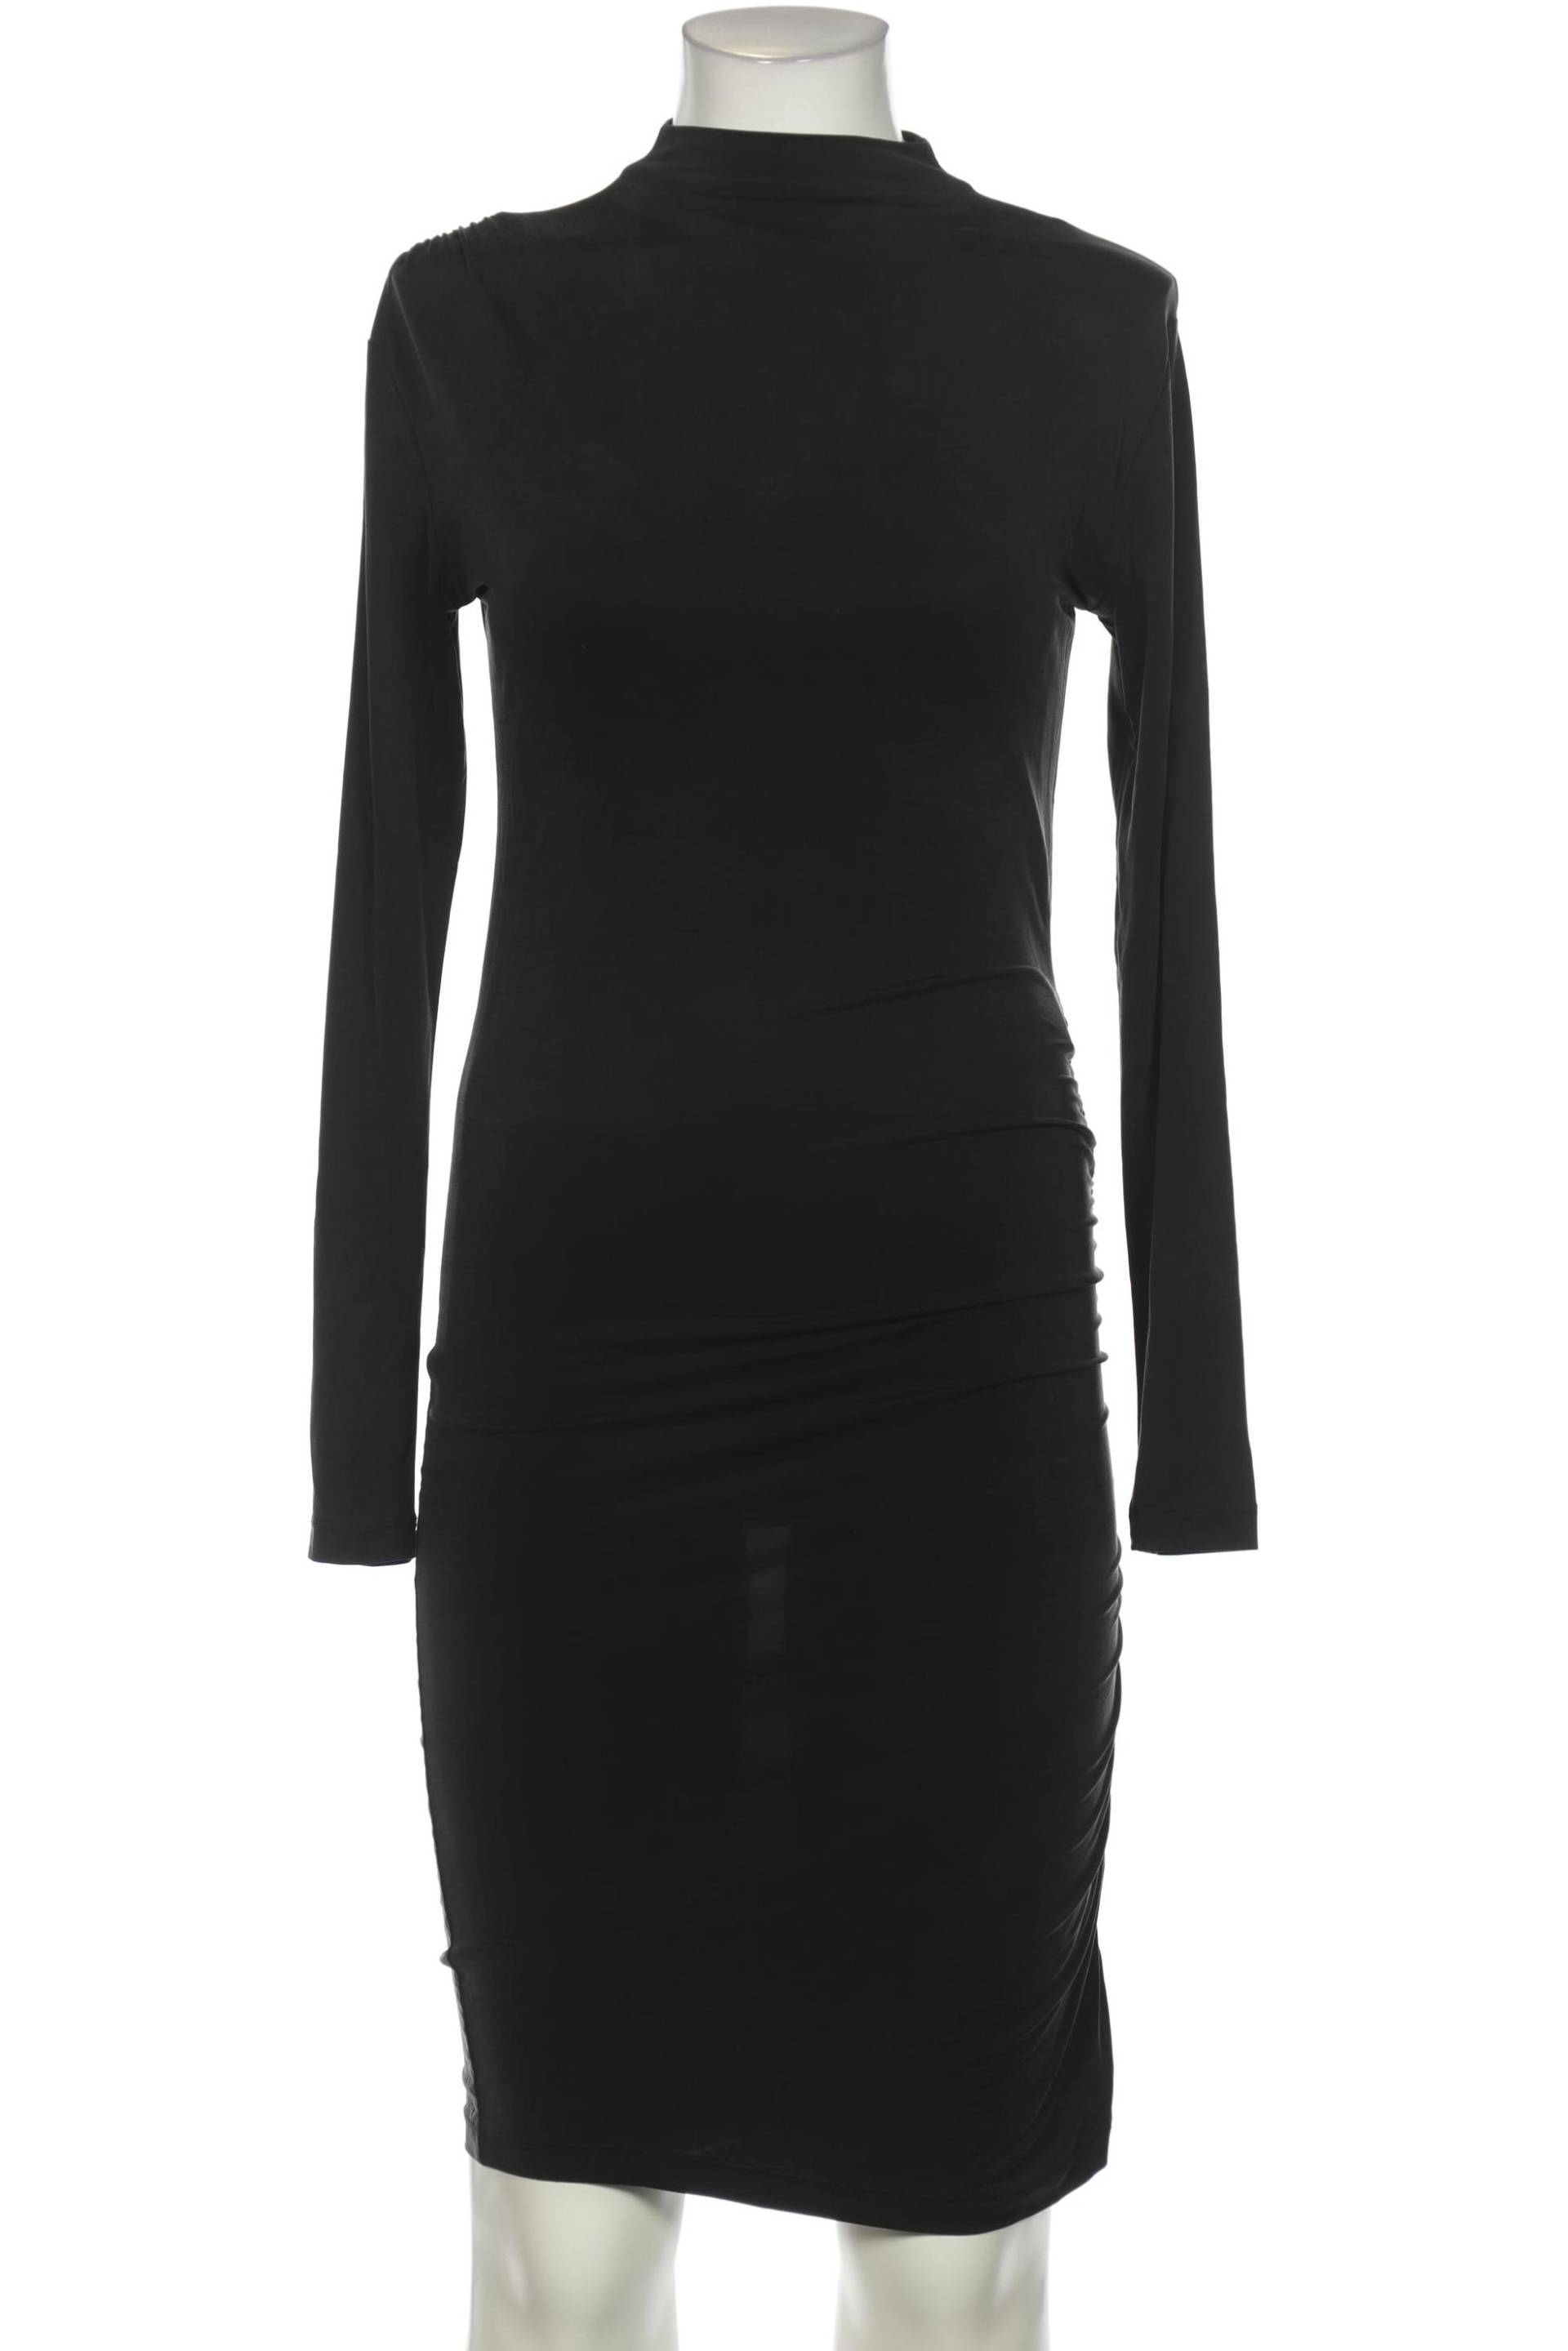 SECOND FEMALE Damen Kleid, schwarz von SECOND FEMALE